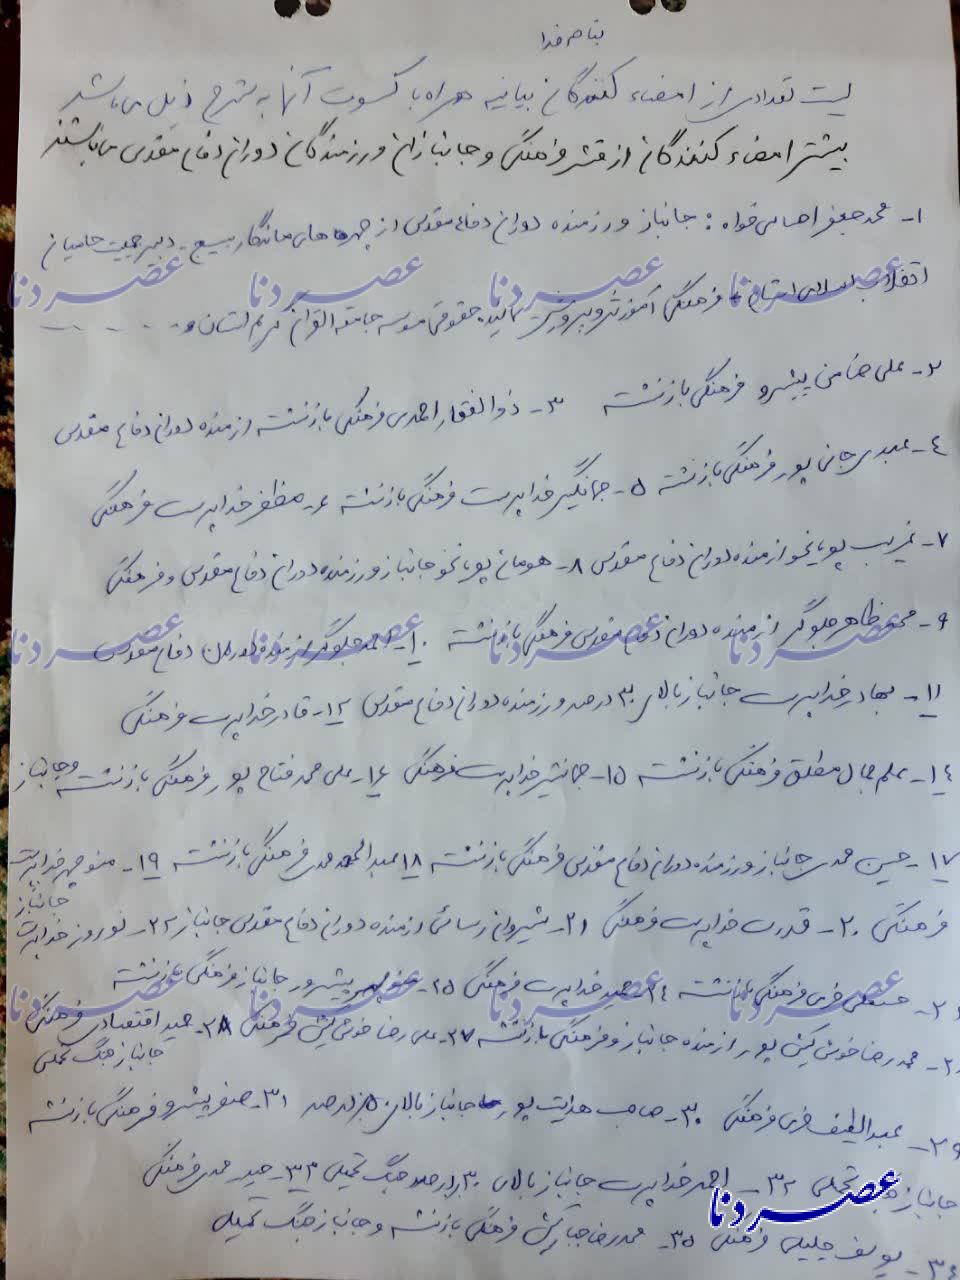 بیانیه تند جمعی از انقلابیون خطاب به استاندار/ حرکت قطار انقلاب در استان از ریل خارج شده است/ استعفا دهید